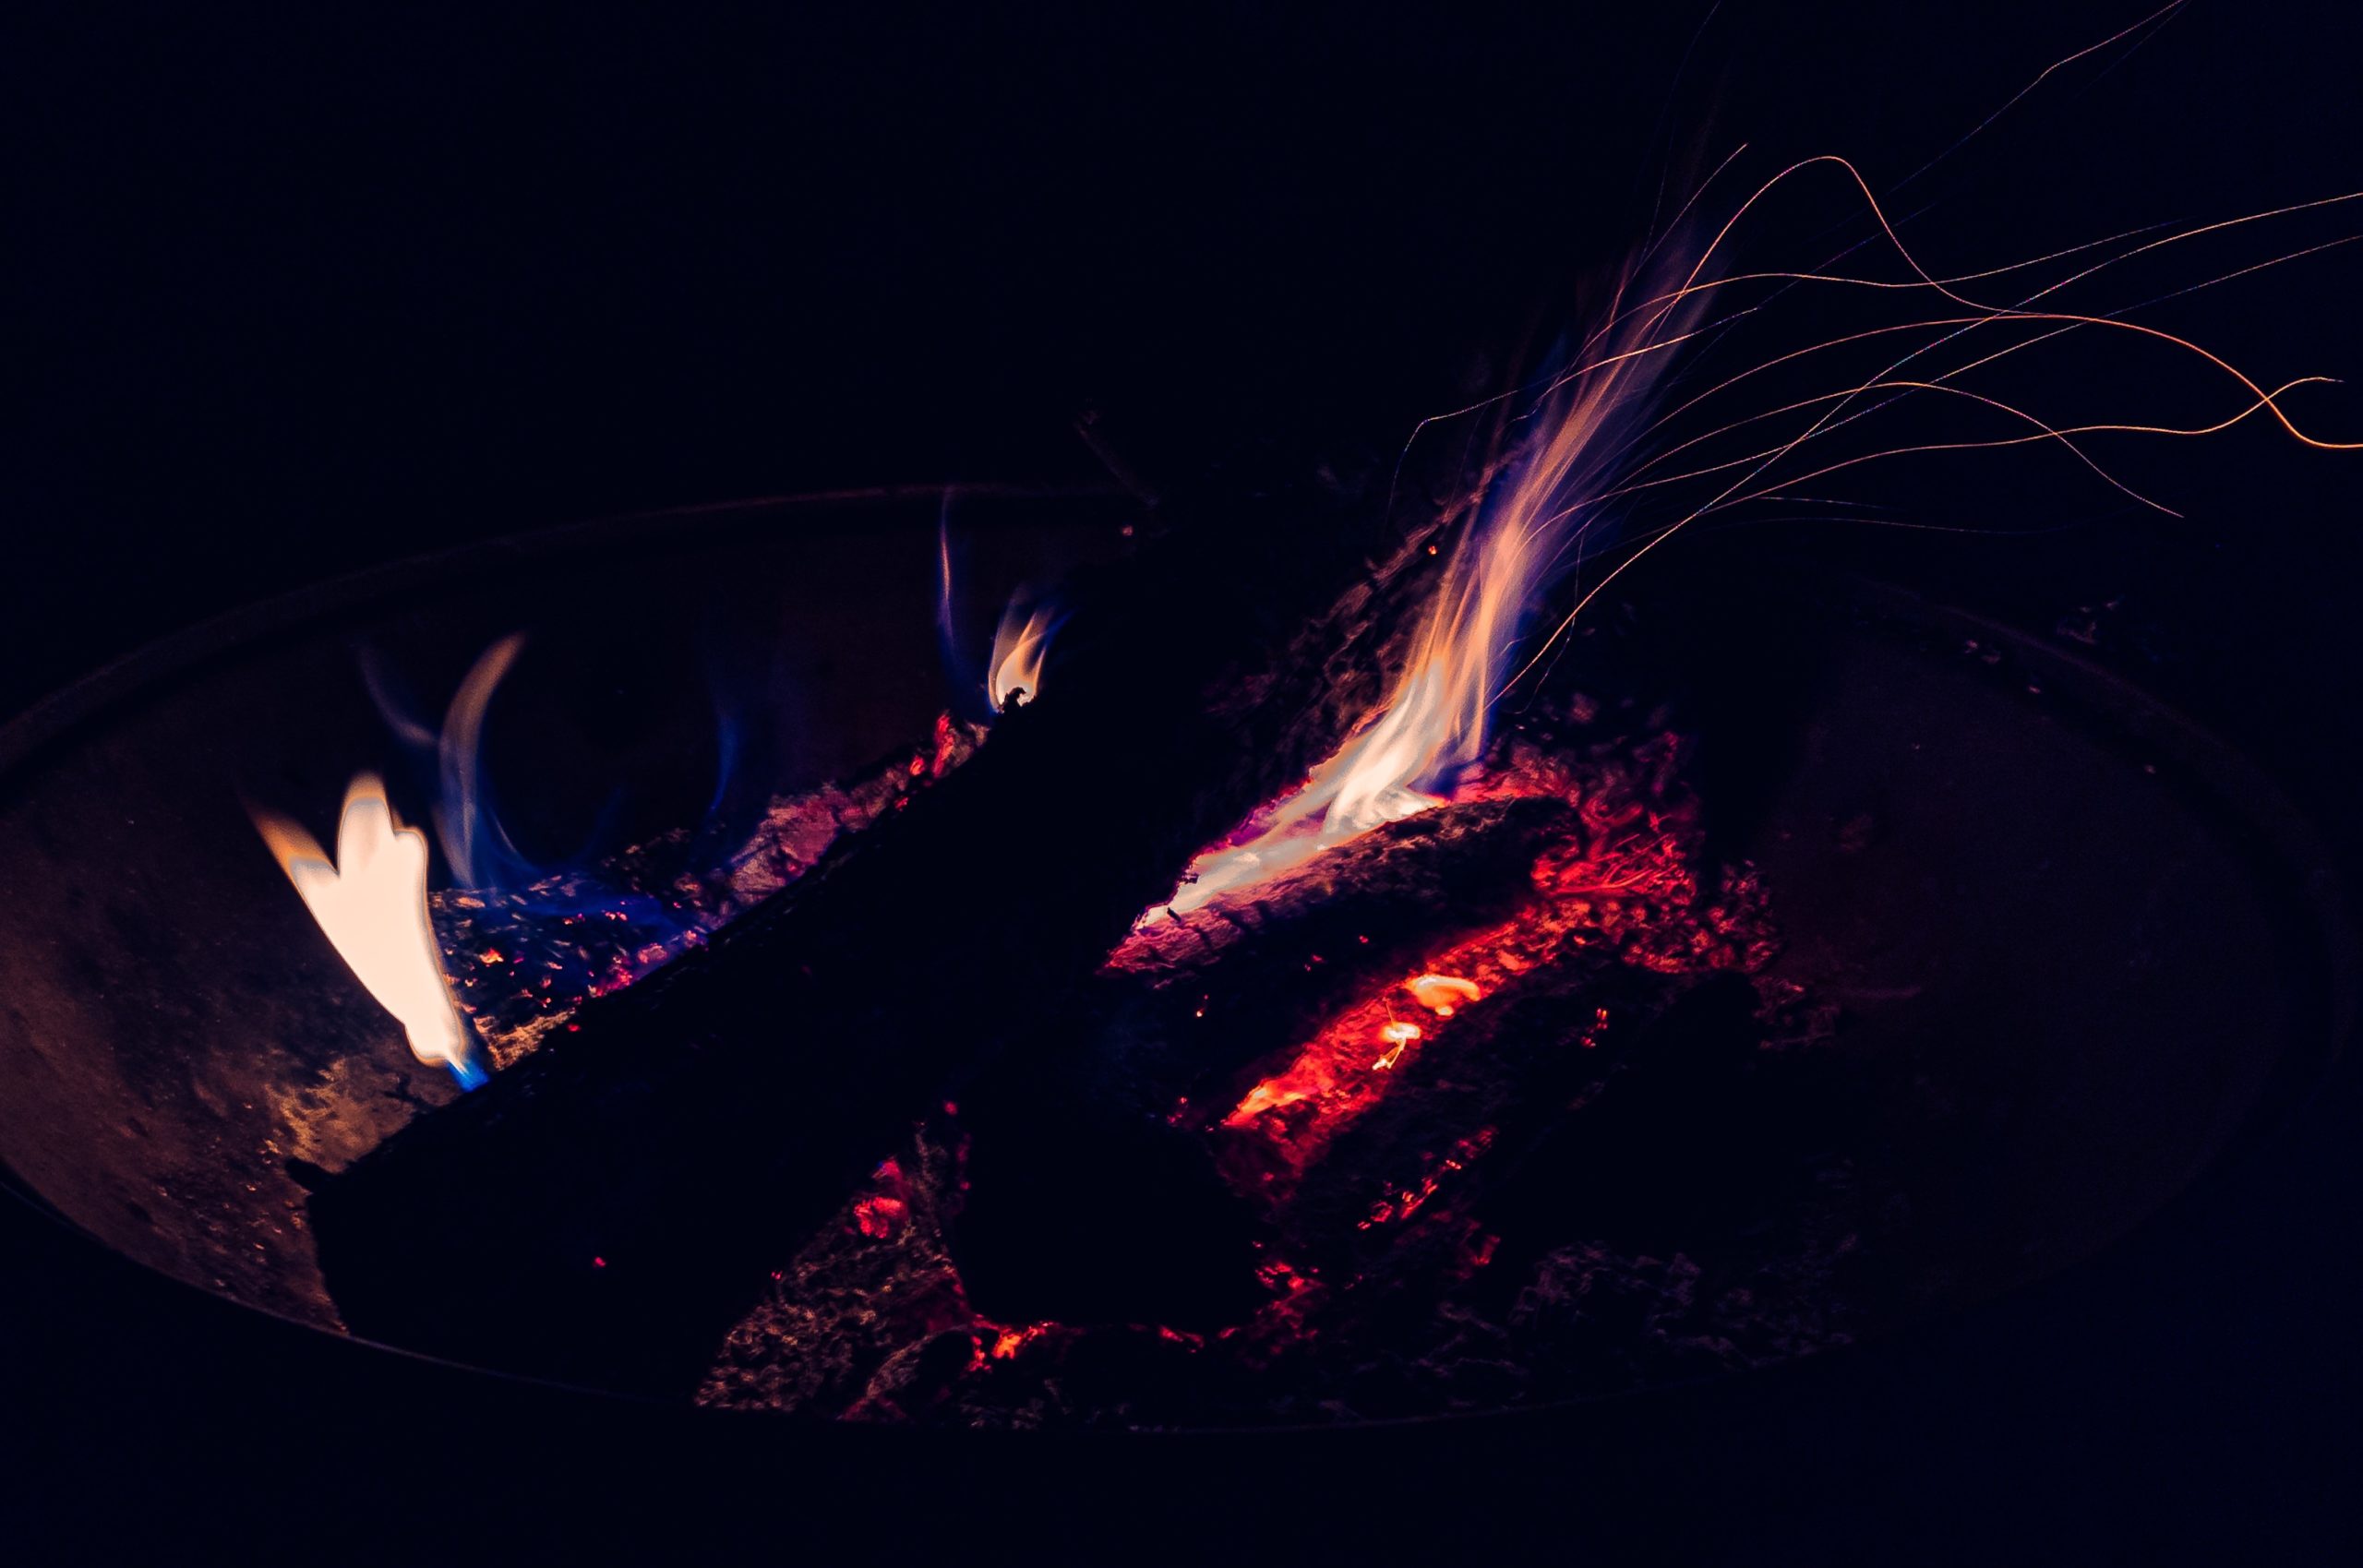 A small bonfire